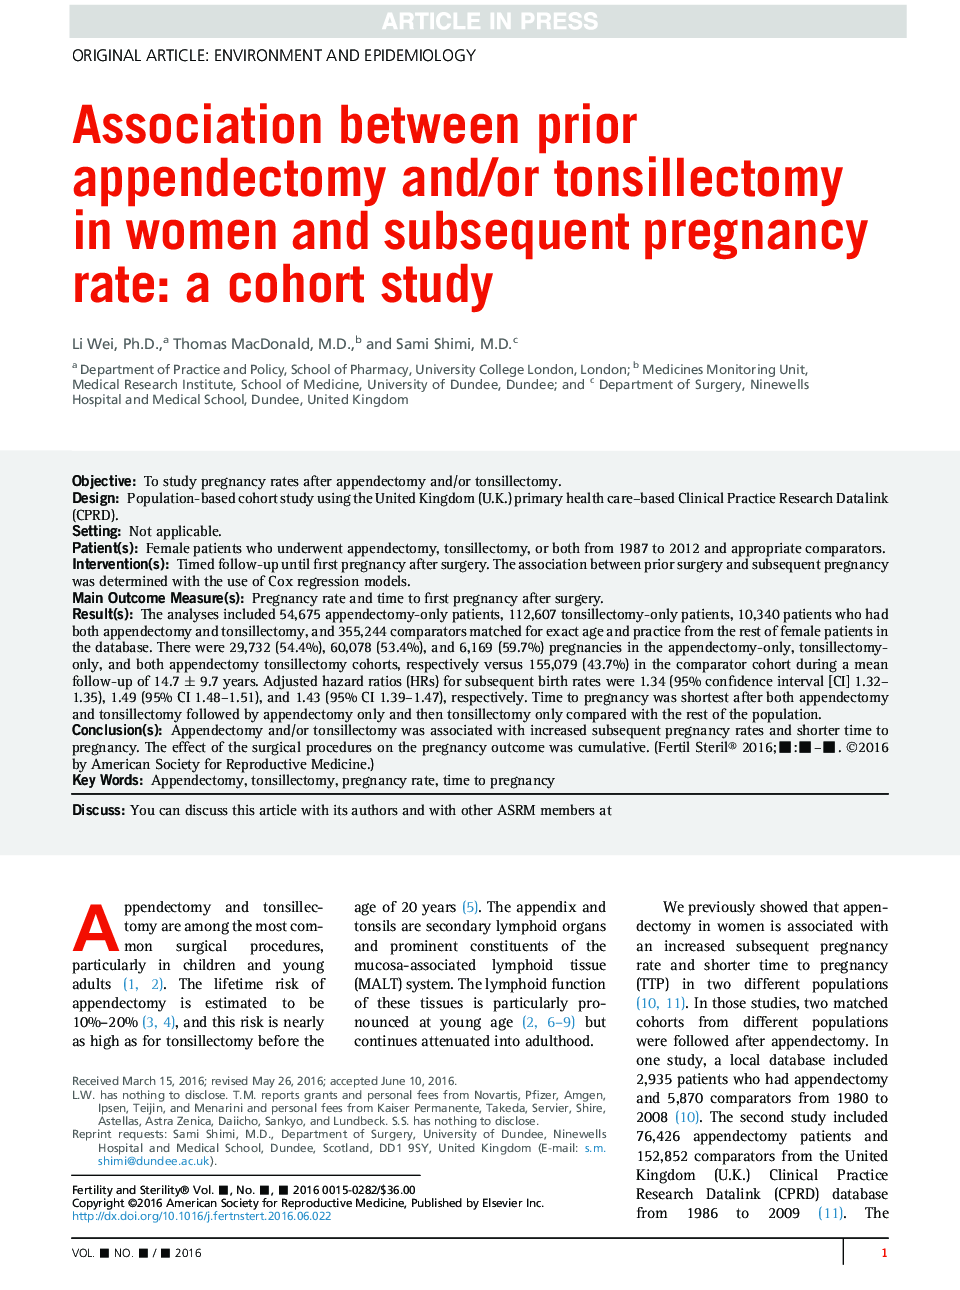 ارتباط بین آپاندکتومی قبل و / یا تنسیلکتومی در زنان و میزان بارداری پس از آن: یک مطالعه کوهورت 